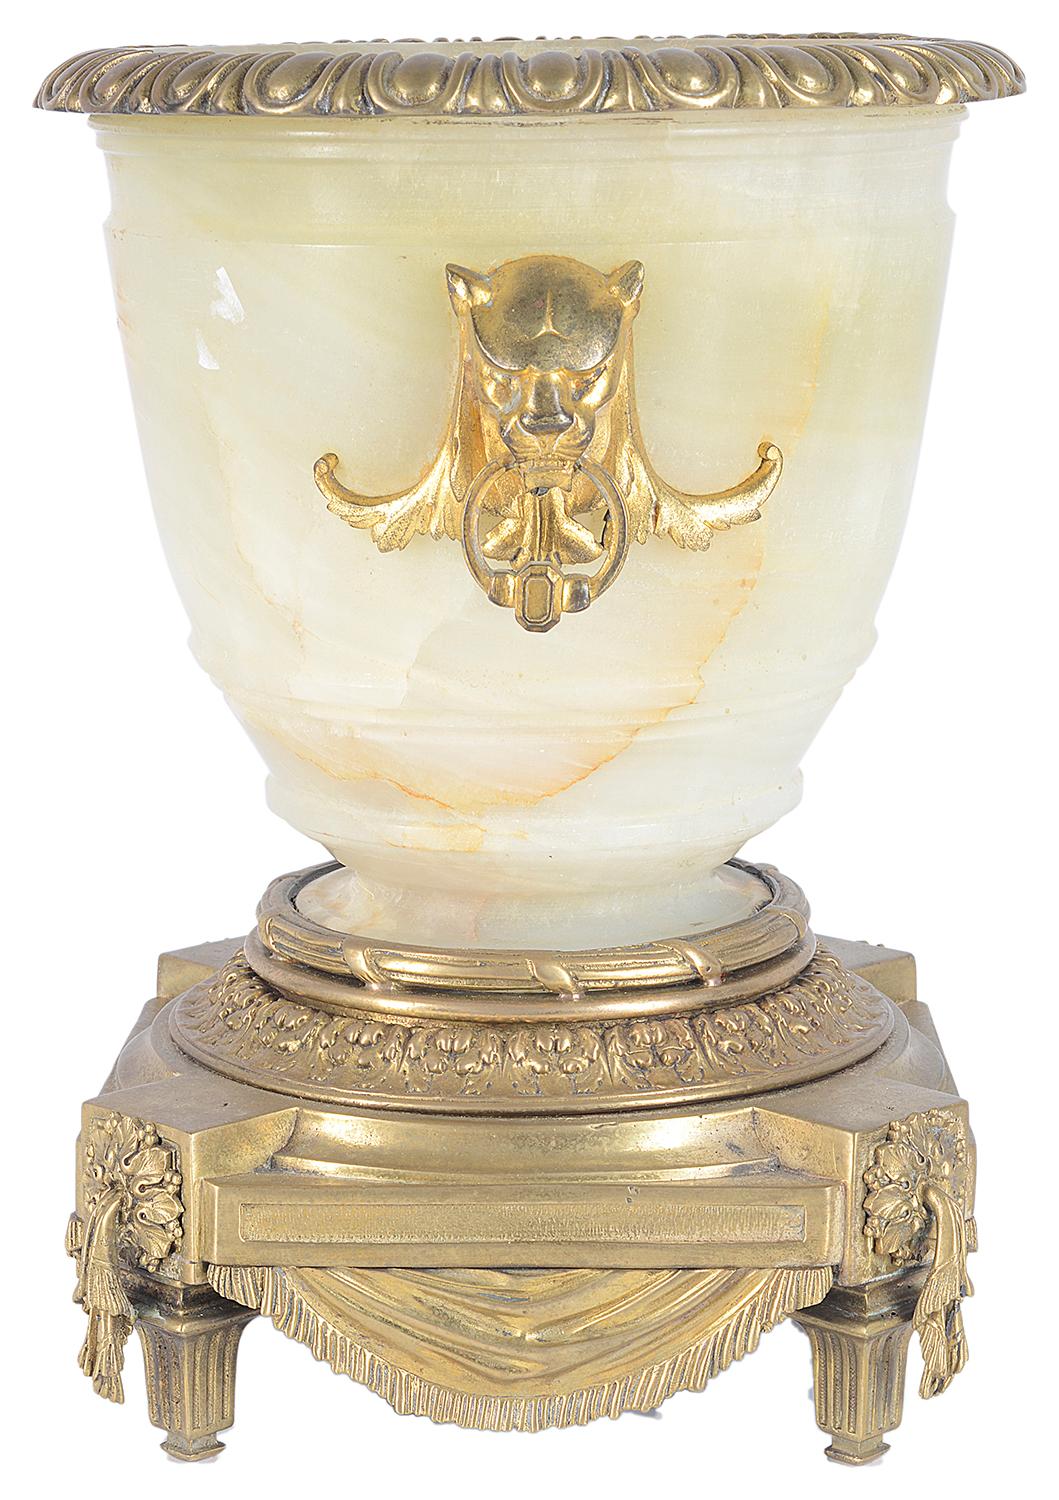 Eine klassische Urne aus Alabaster und vergoldetem Ormolu von guter Qualität aus dem 19. Mit einem Ei und Pfeil geformt Ormolu Rand, Leopard Maske Ring Tropfen Griffe auf beiden Seiten, durchscheinende Alabaster auf die Urne und hob eine klassische